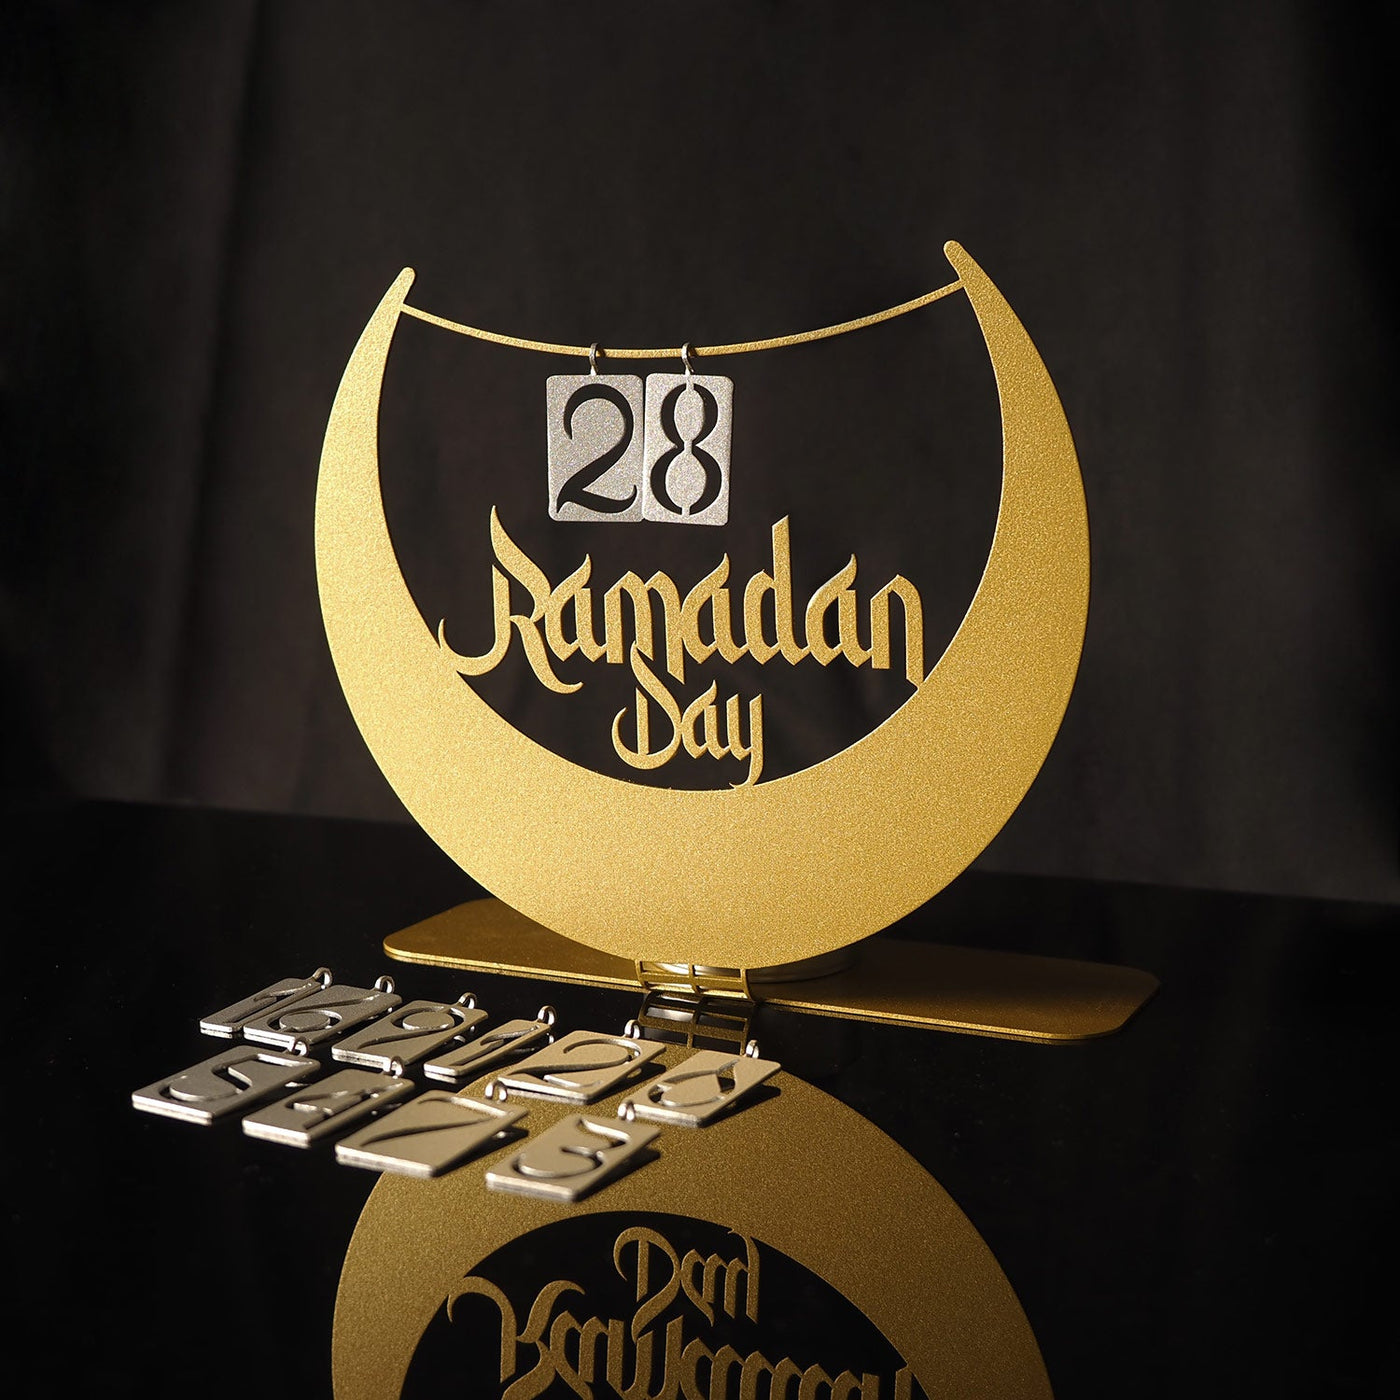 تصميم بفكرة جديد لهلال رمضان مع التقويم الخاص بشهر رمضان - WAMH125